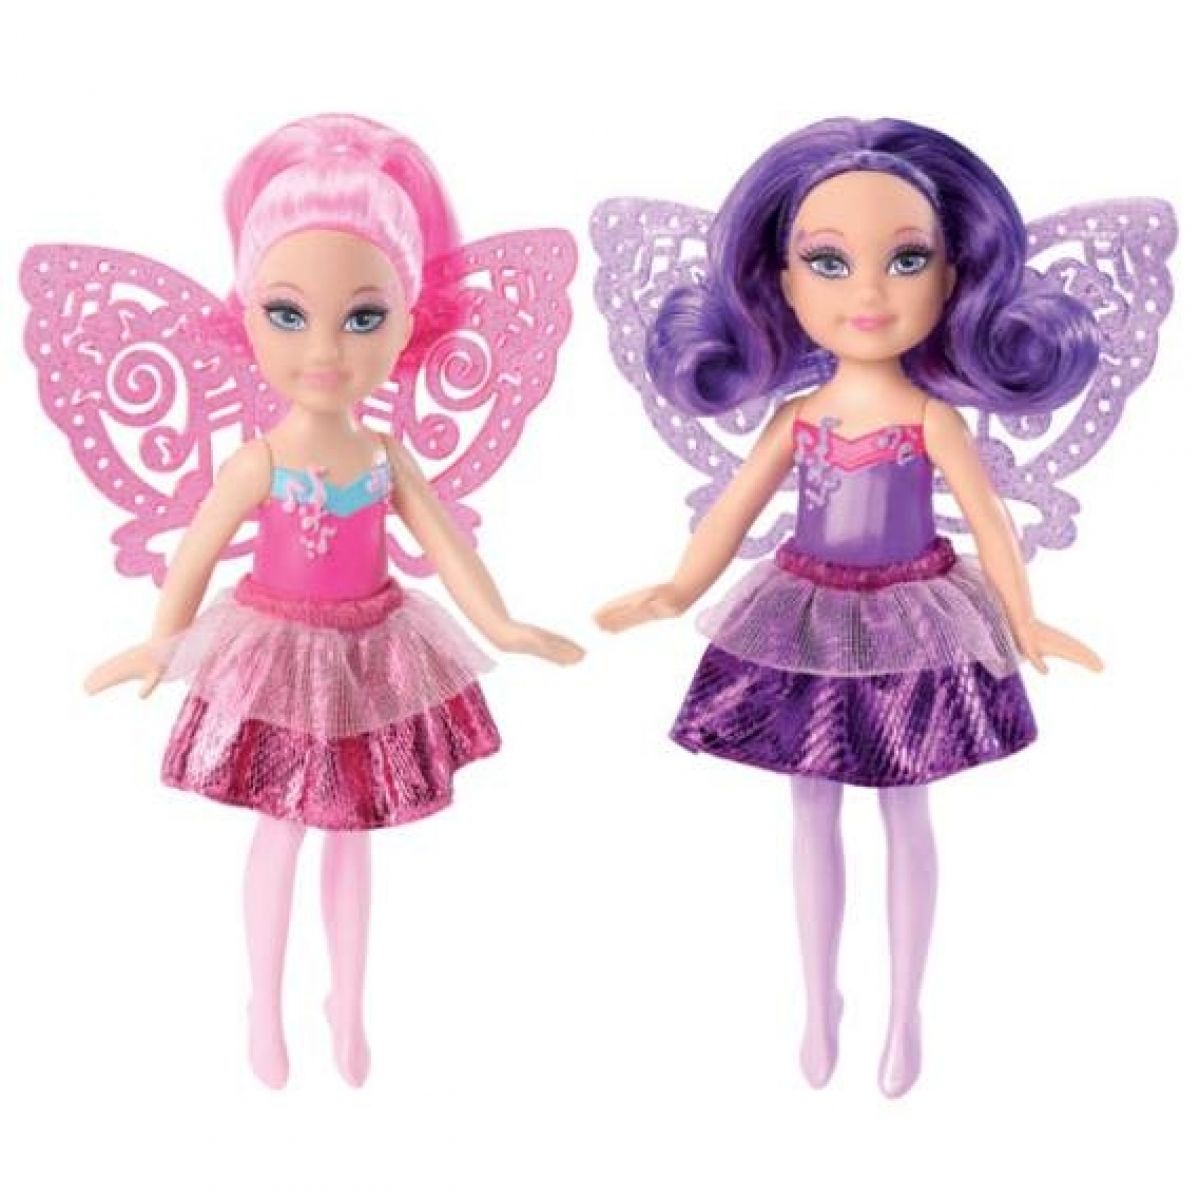 Barbie mini víla Mattel X7915